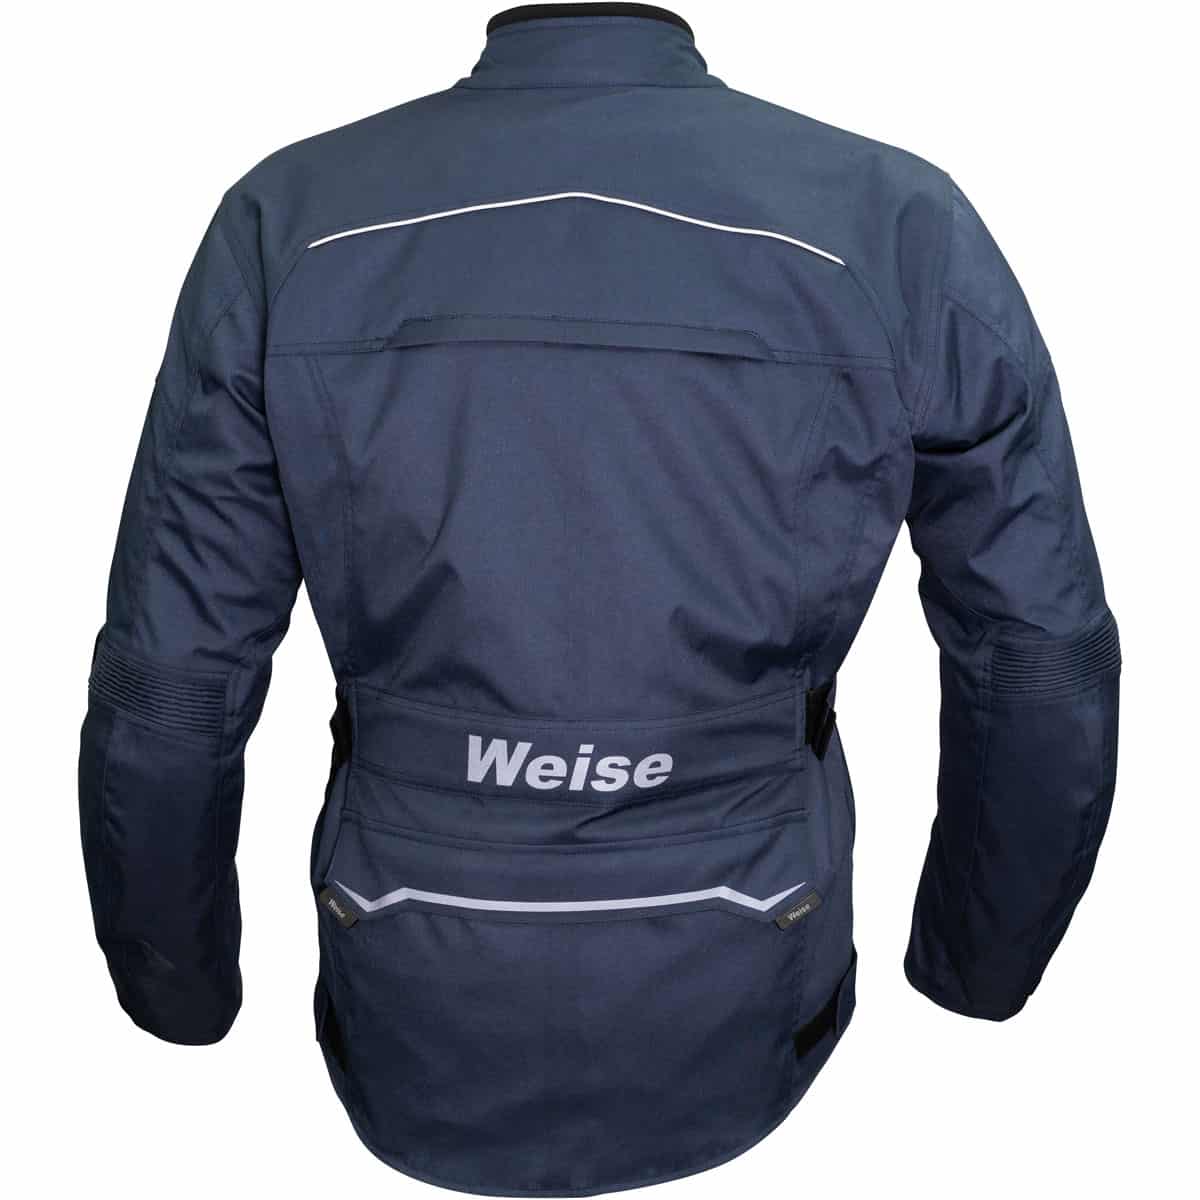 Weise Core Adventure waterproof motorcycle jacket navy back